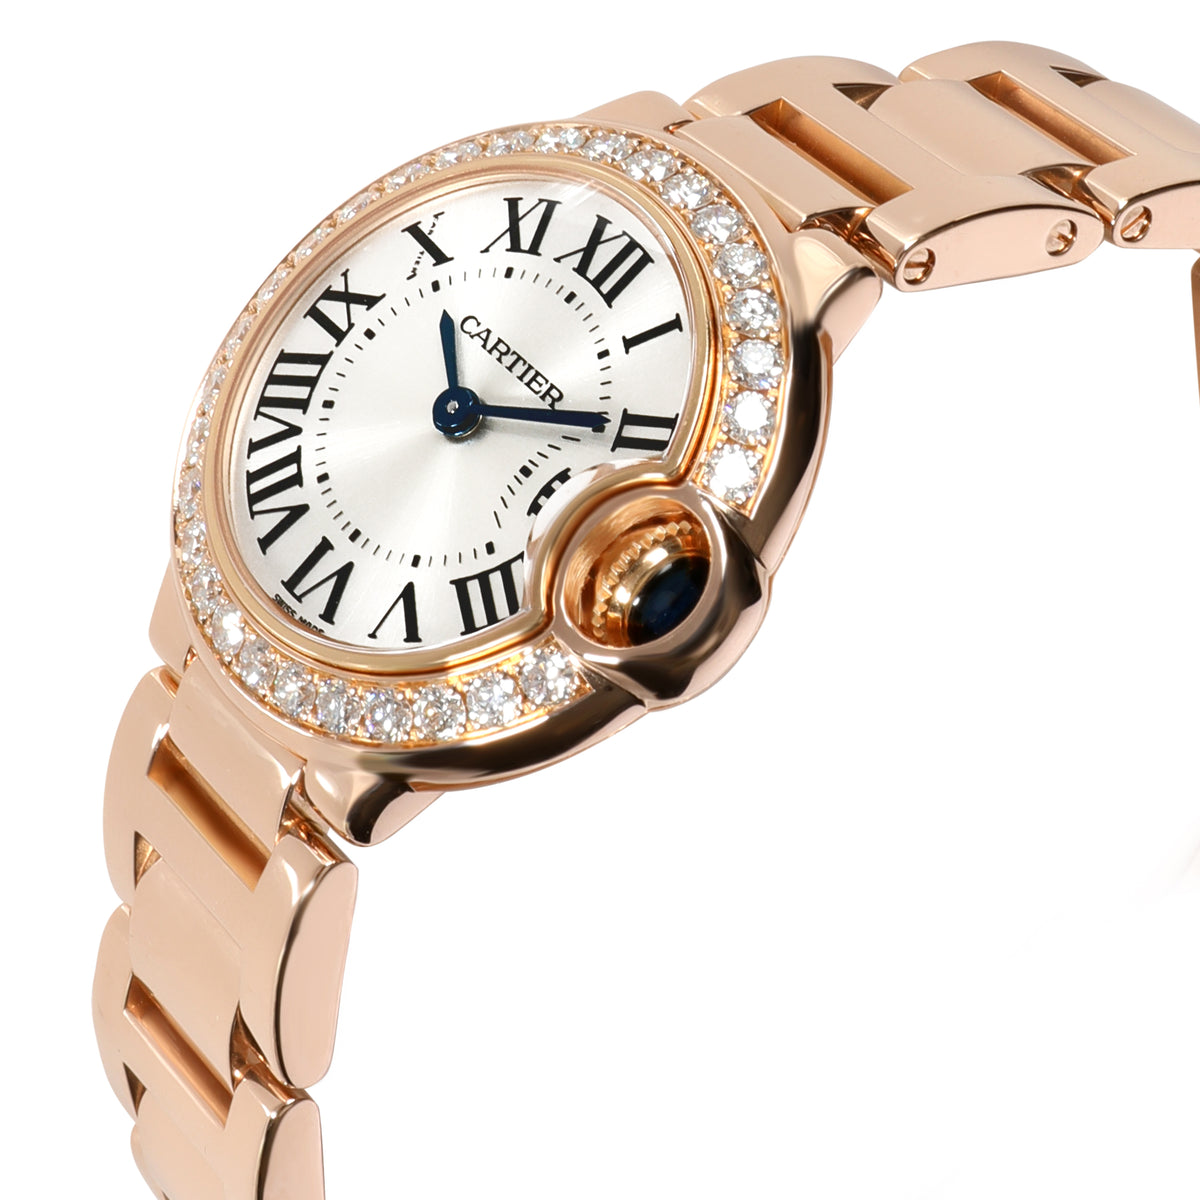 Cartier Ballon Bleu WE9002Z3 Women's Diamond Watch in 18kt Rose Gold